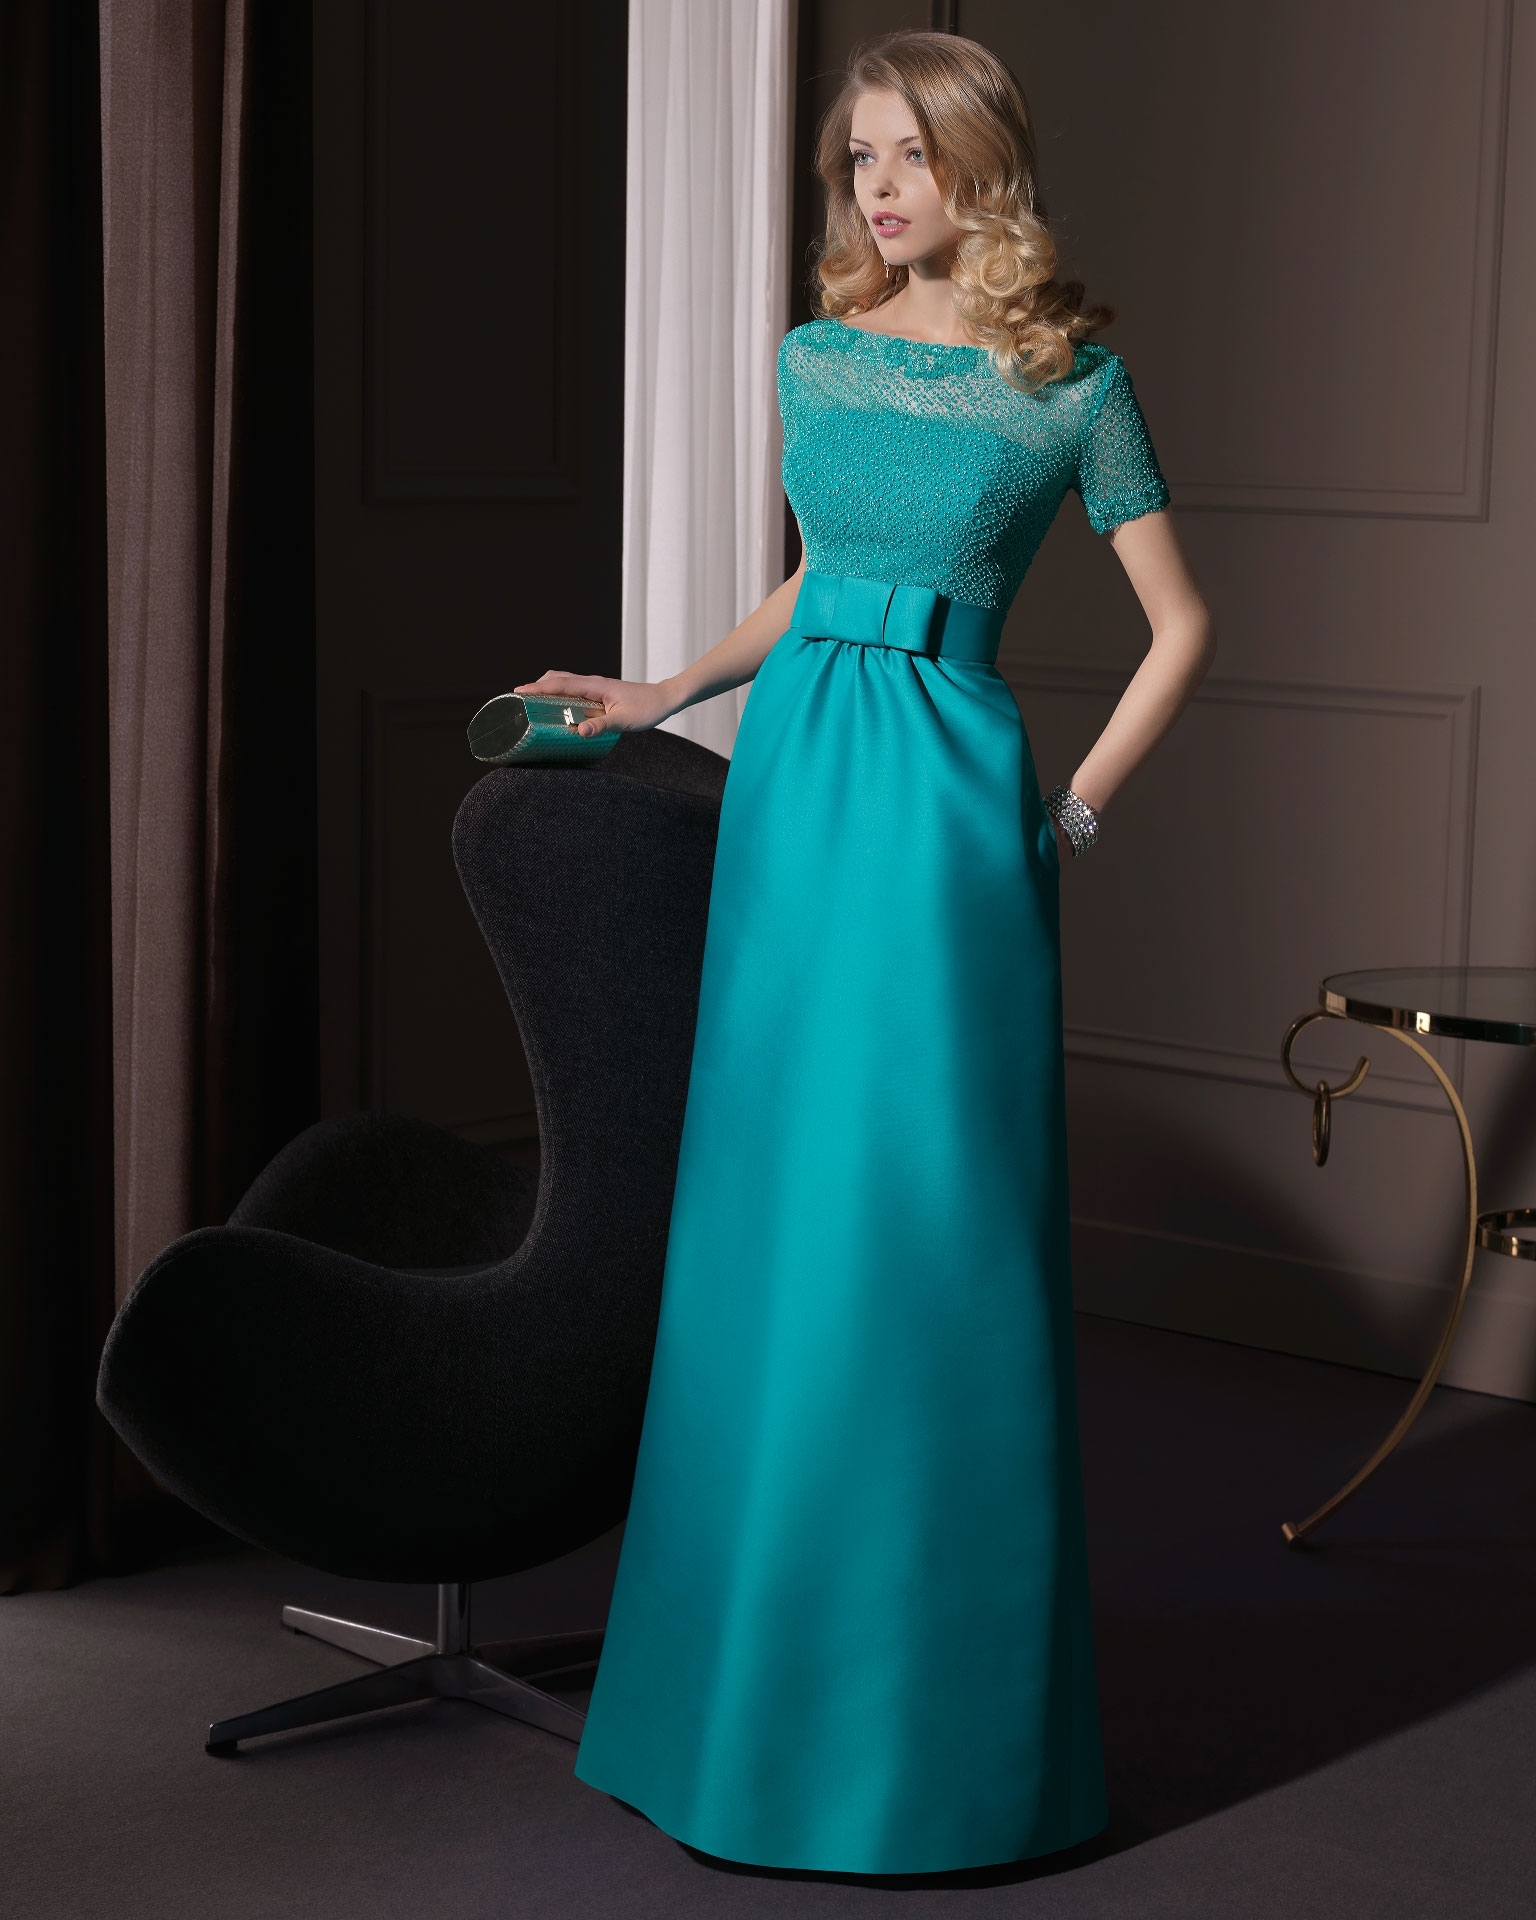 Вечерние платья для полных женщин — самые красивые фасоны и модели